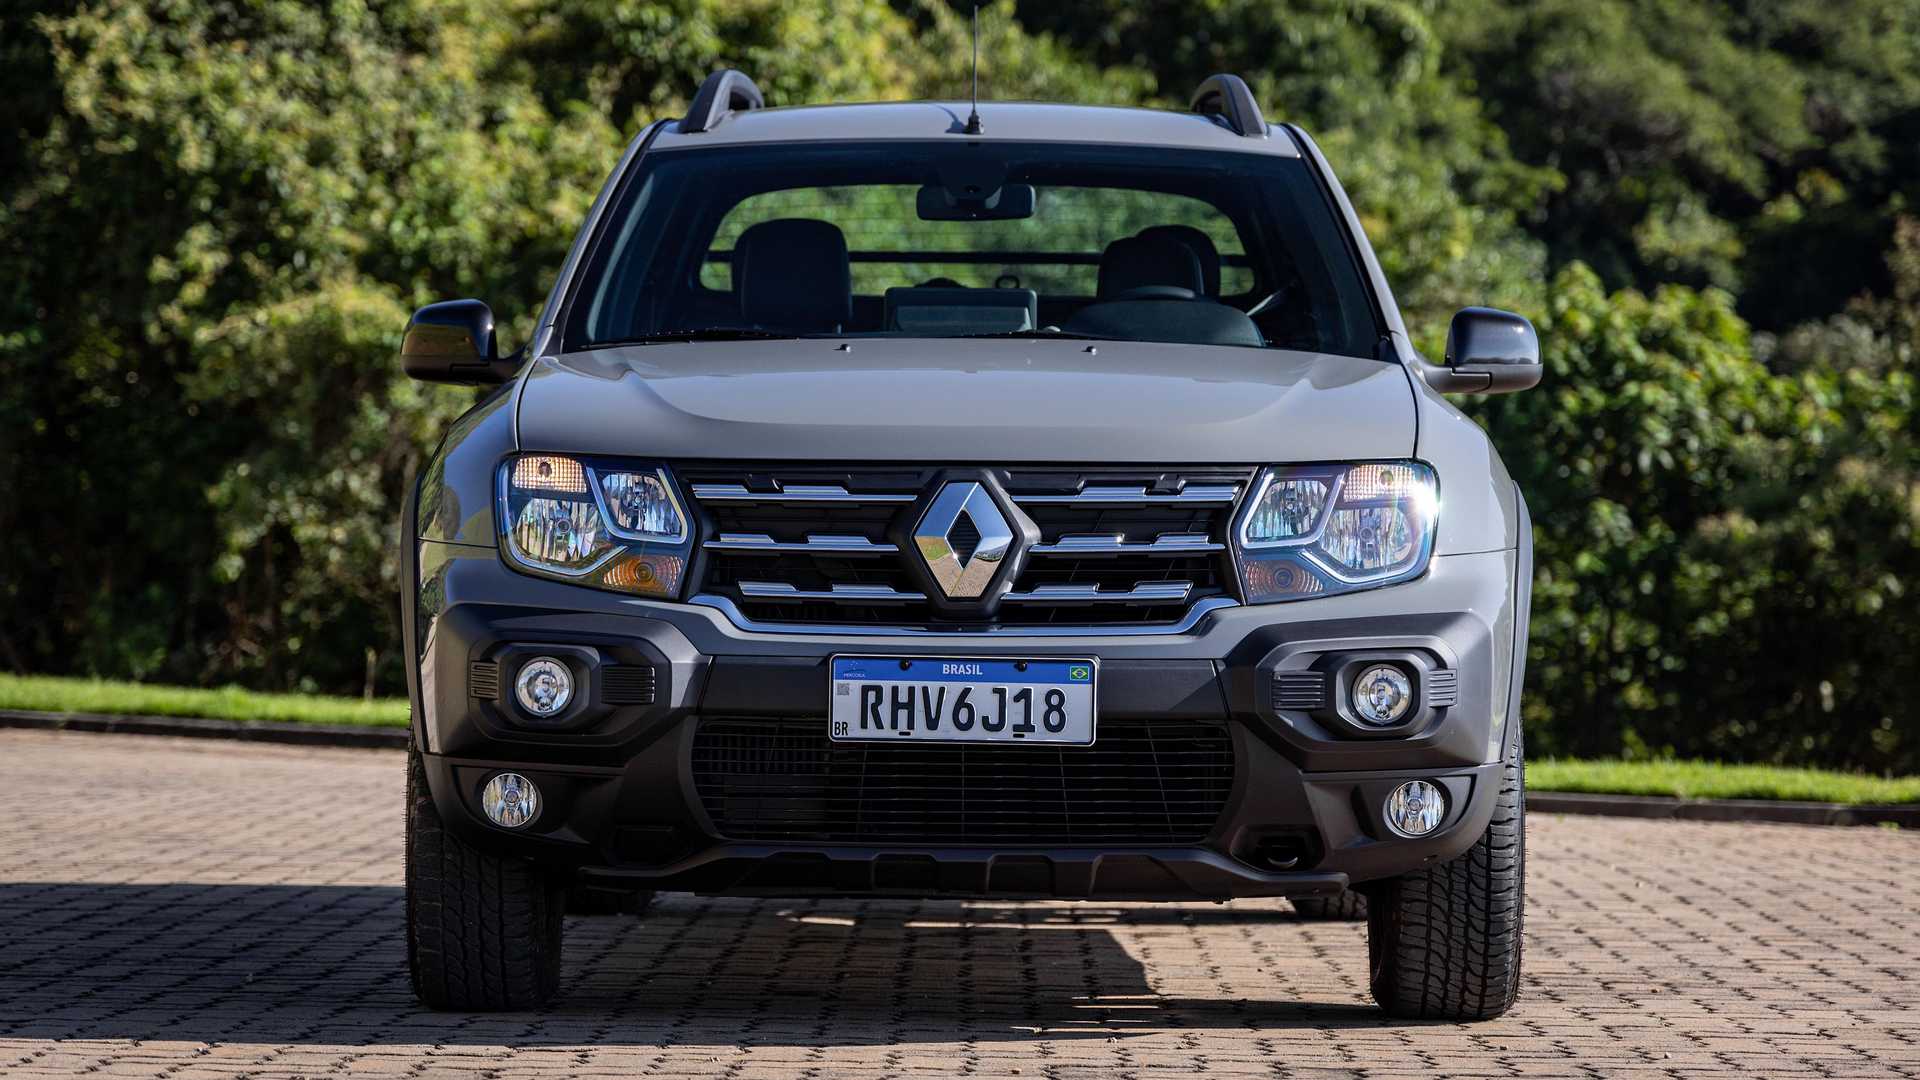 Renault Oroch 2023